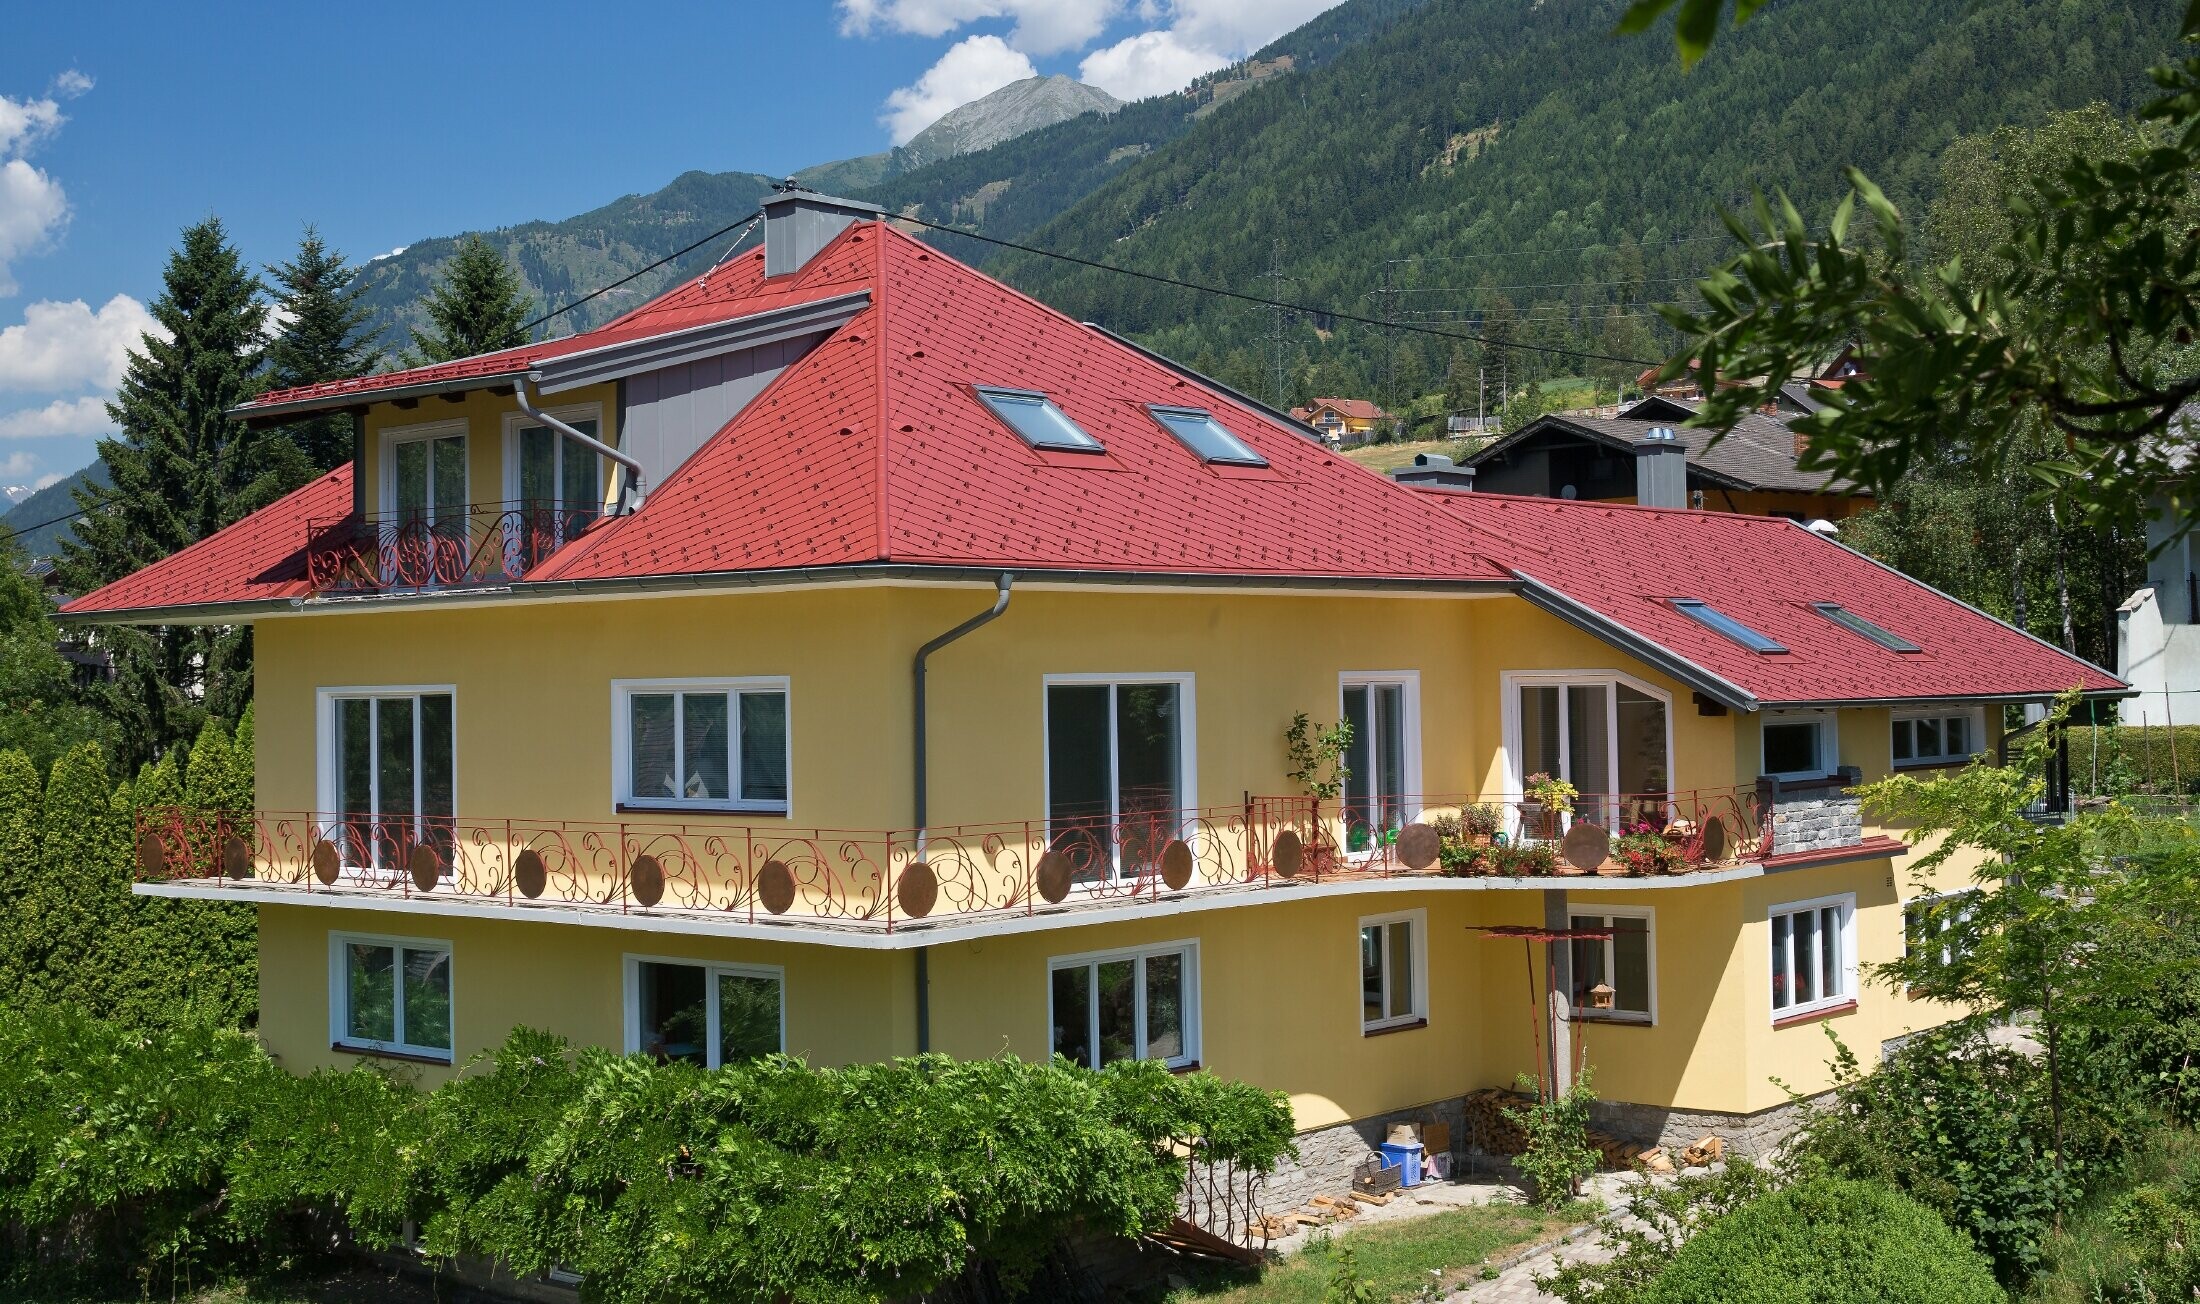 klasična enodružinska hiša s čopasto streho, prekrita s strešnimi rombi v oksidno rdeči barvi.